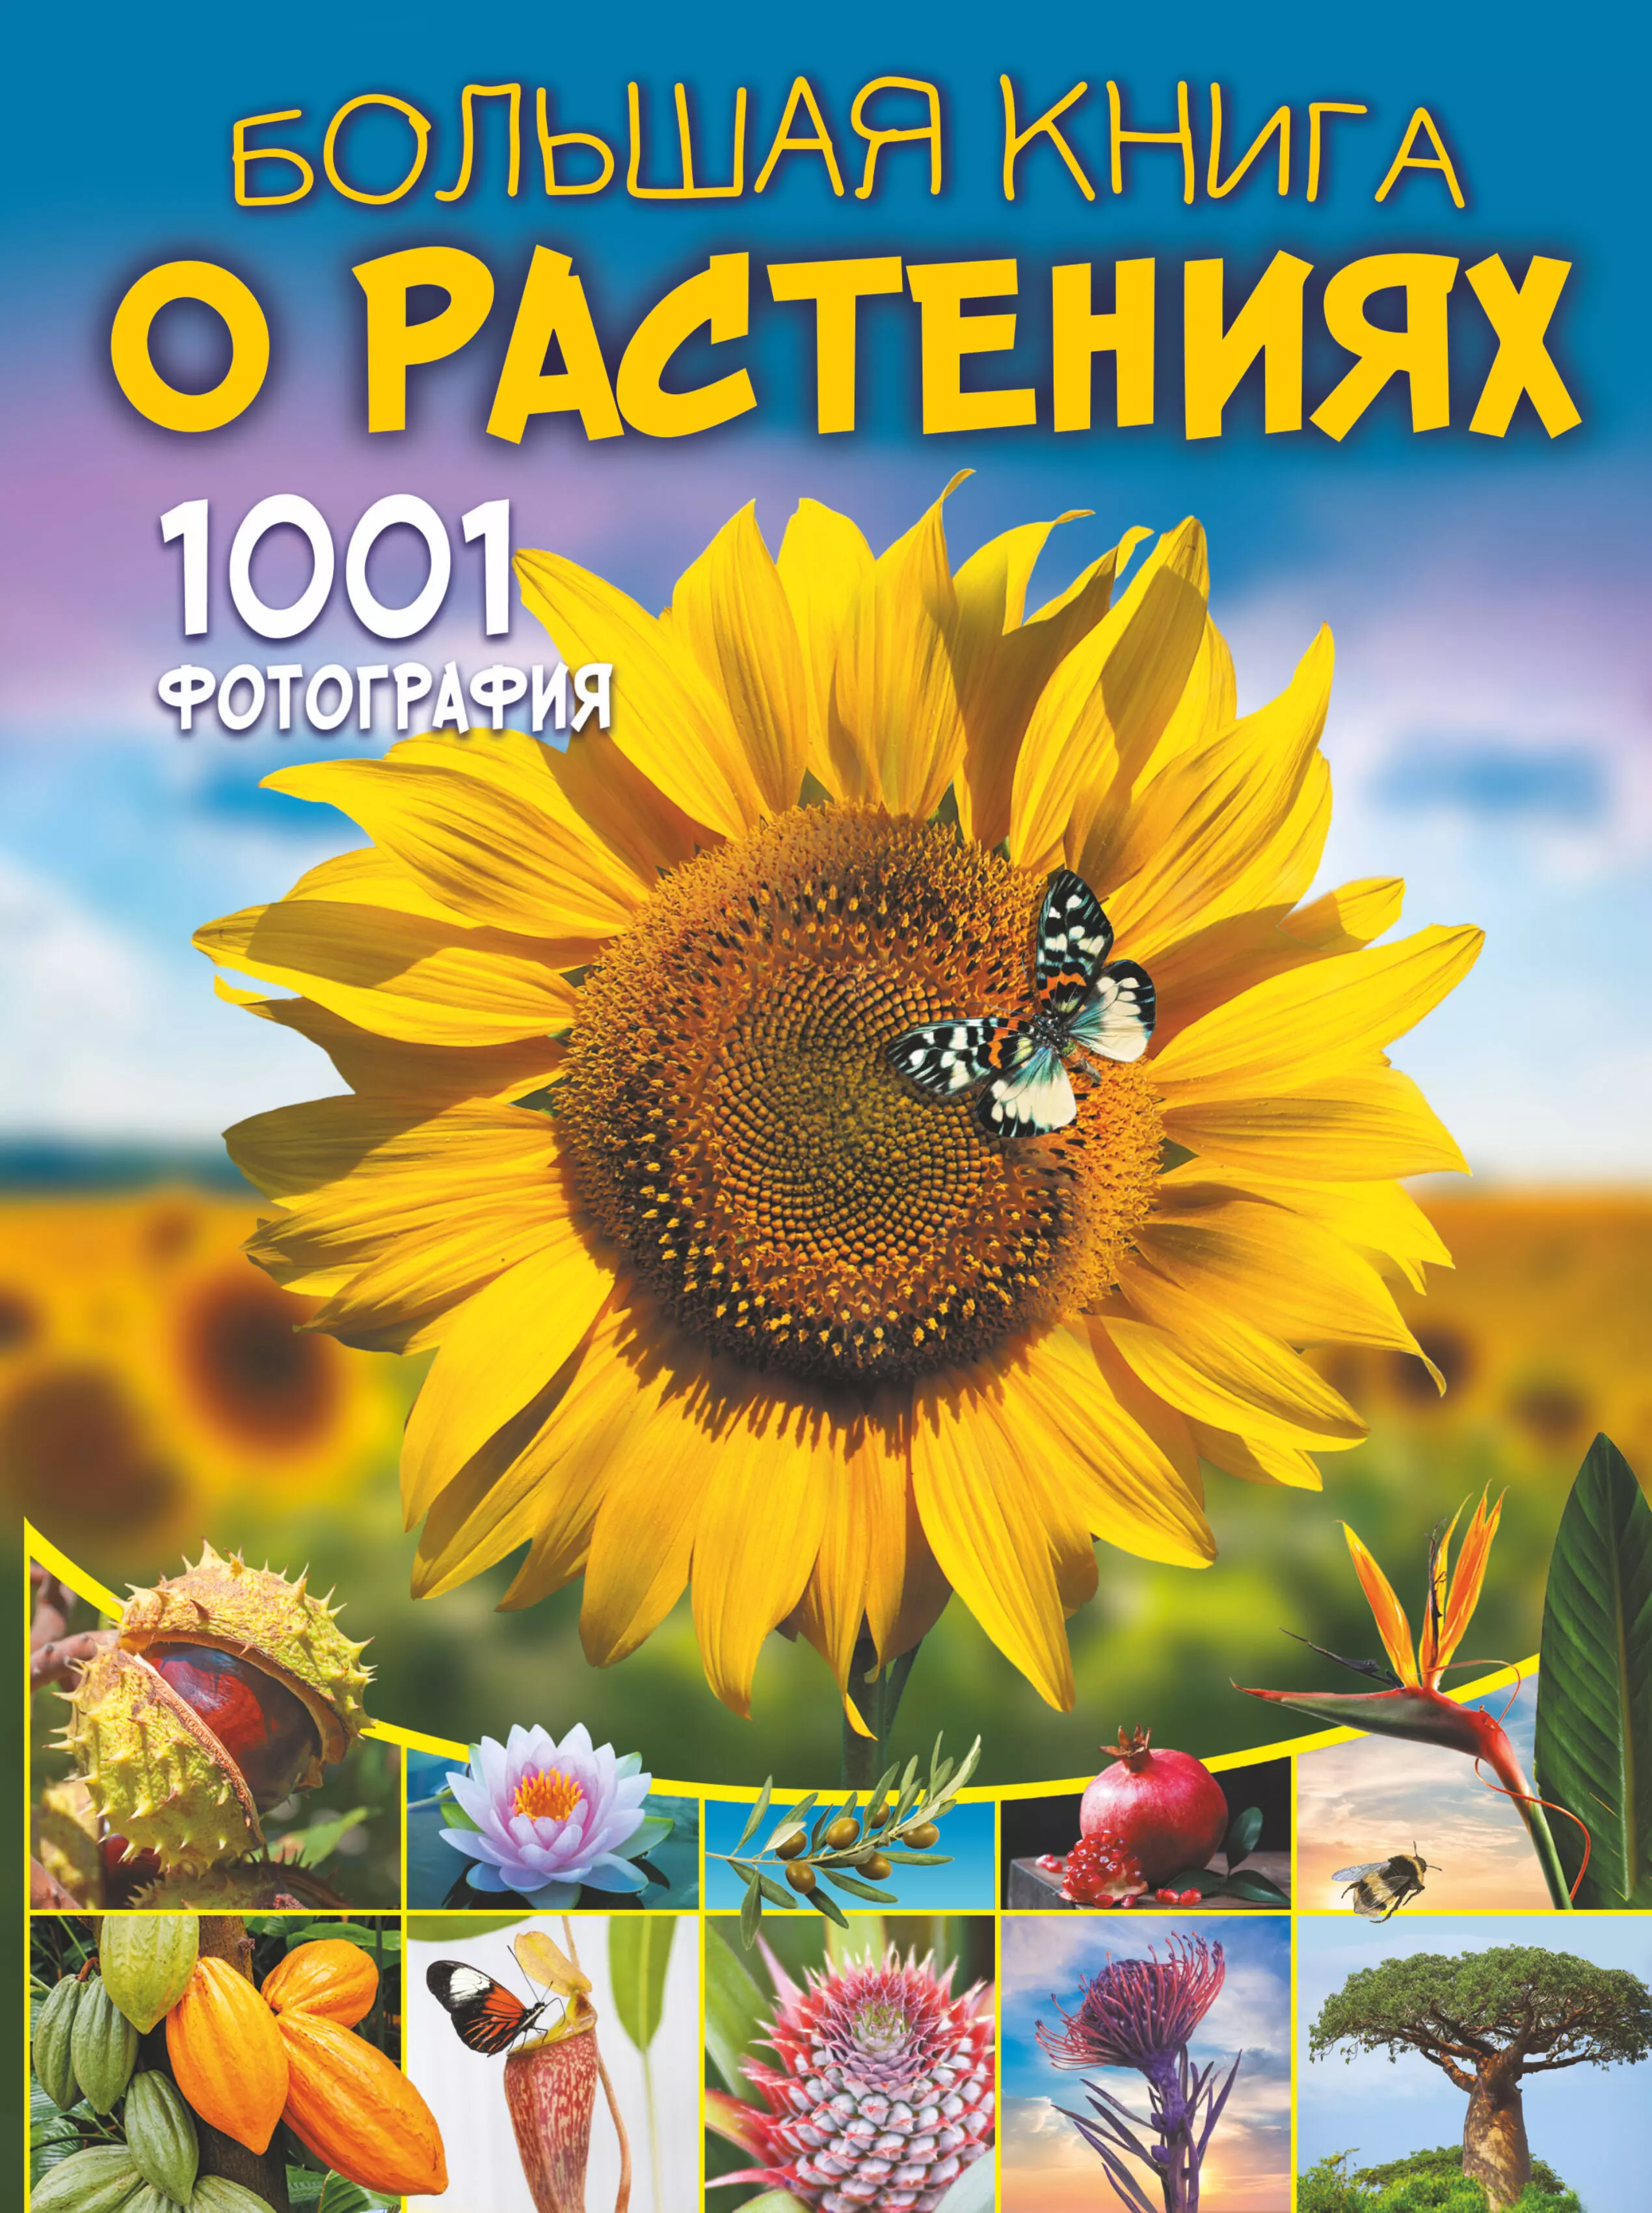 Большая книга о растениях. 1001 фотография 1001 фотография большая книга о растениях резько и в